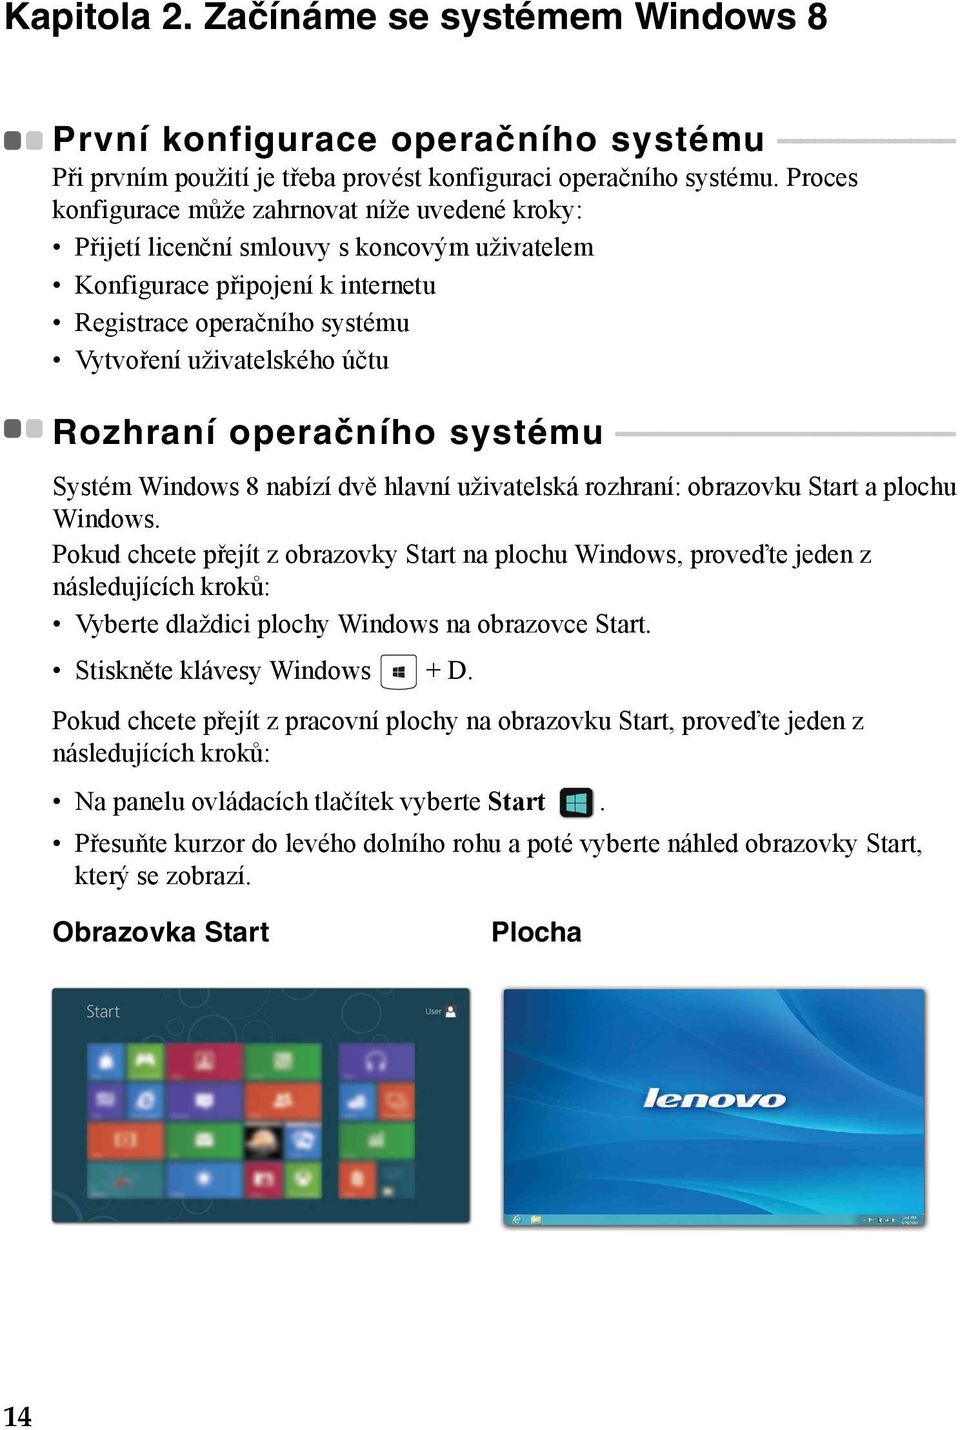 Rozhraní operačního systému - - - - - - - - - - - - - - - - - - - - - - - - - - - - - - - - - - - - - - - - - - - - - - Systém Windows 8 nabízí dvě hlavní uživatelská rozhraní: obrazovku Start a